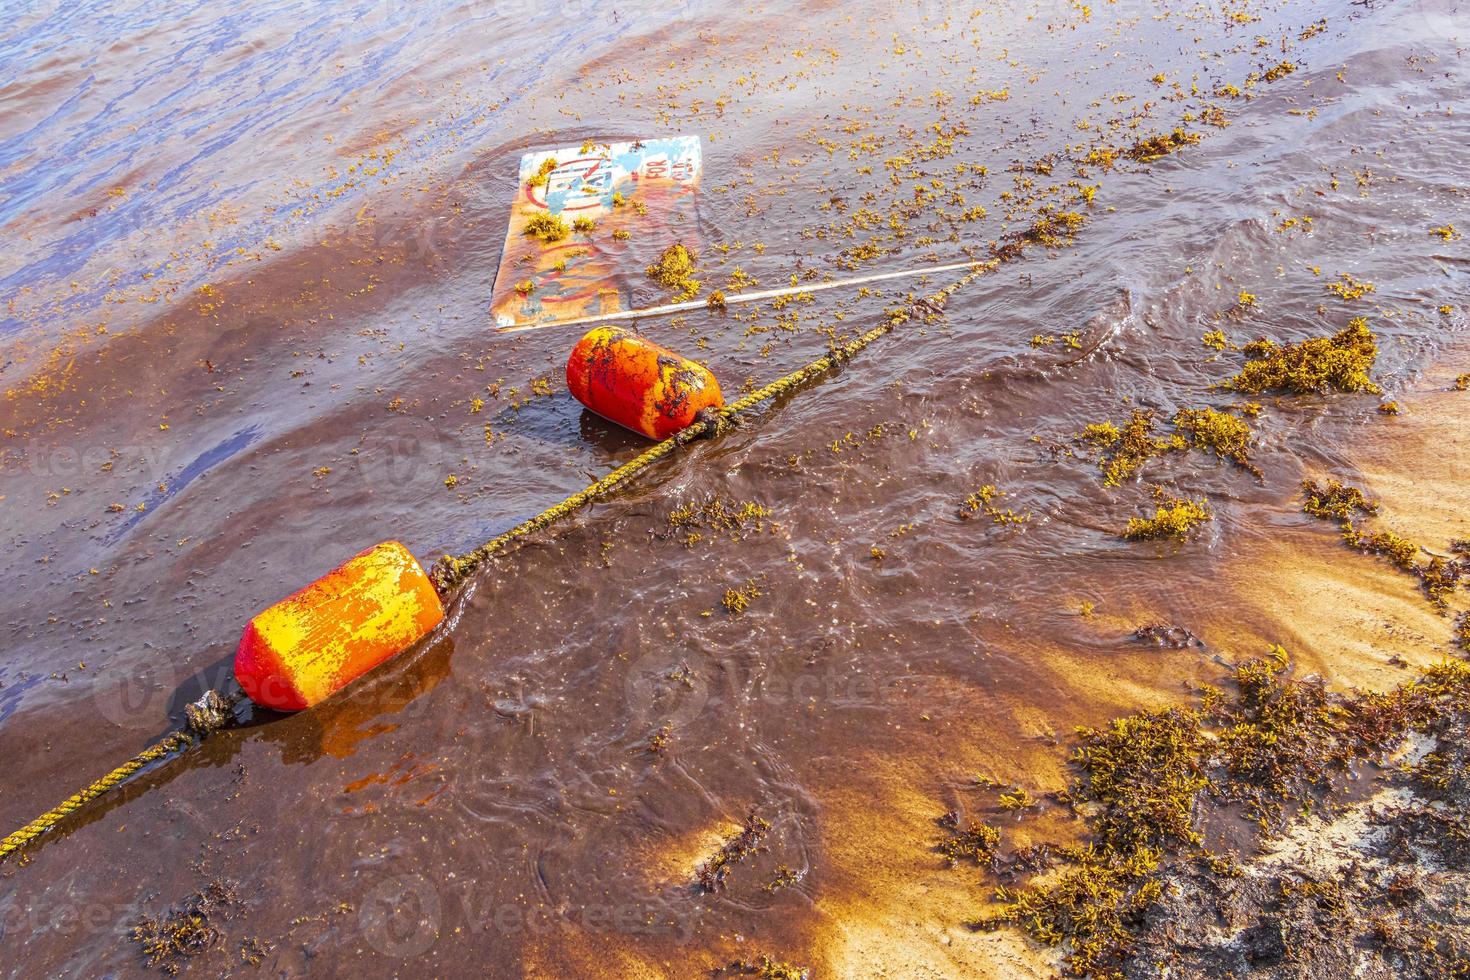 sehr ekelhafter roter algen-sargazo-strand mit müllverschmutzung mexiko. foto